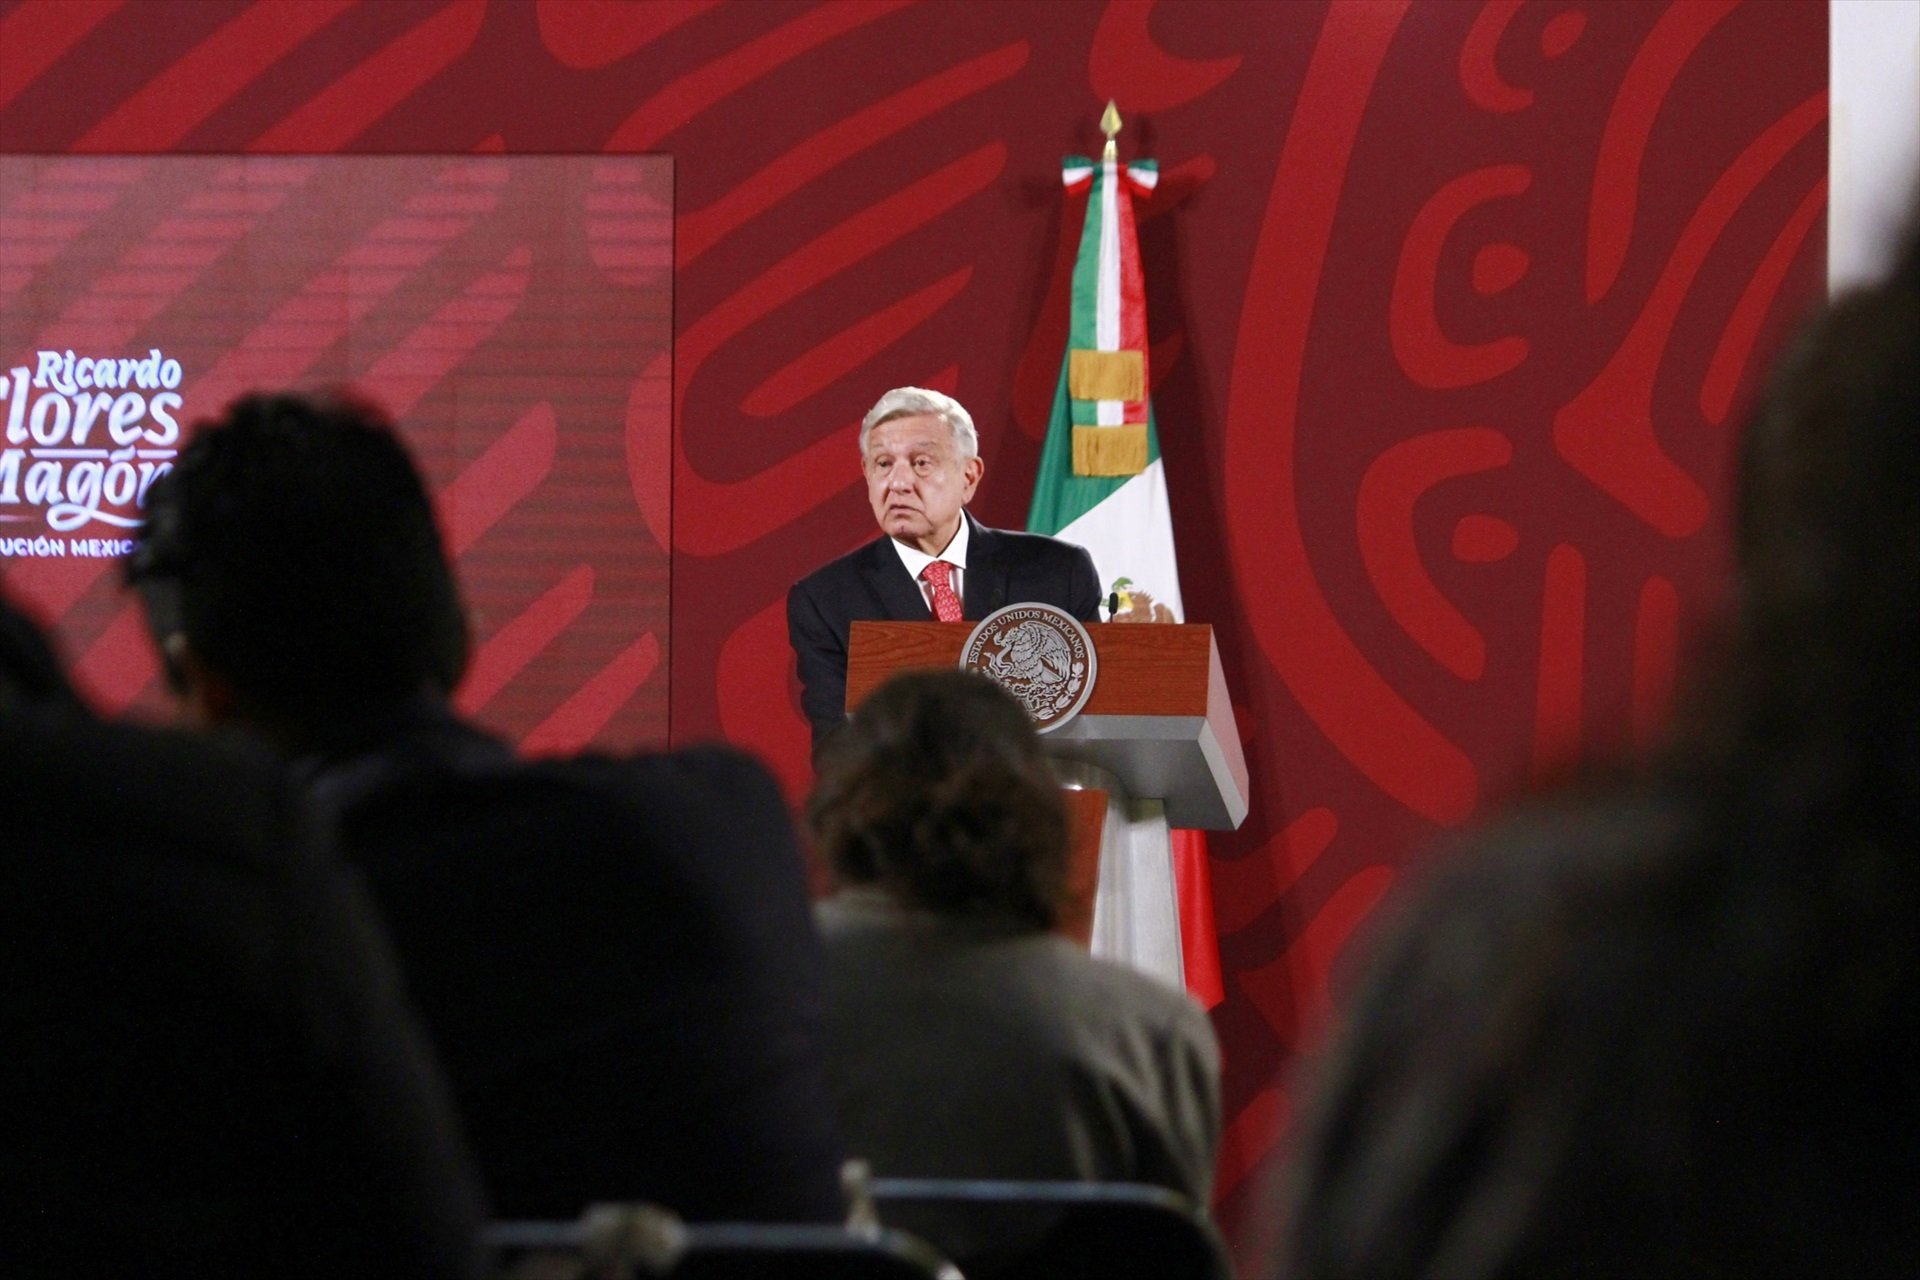 El gobierno español sale a defender Felipe VI ante la crítica ácida del presidente de México